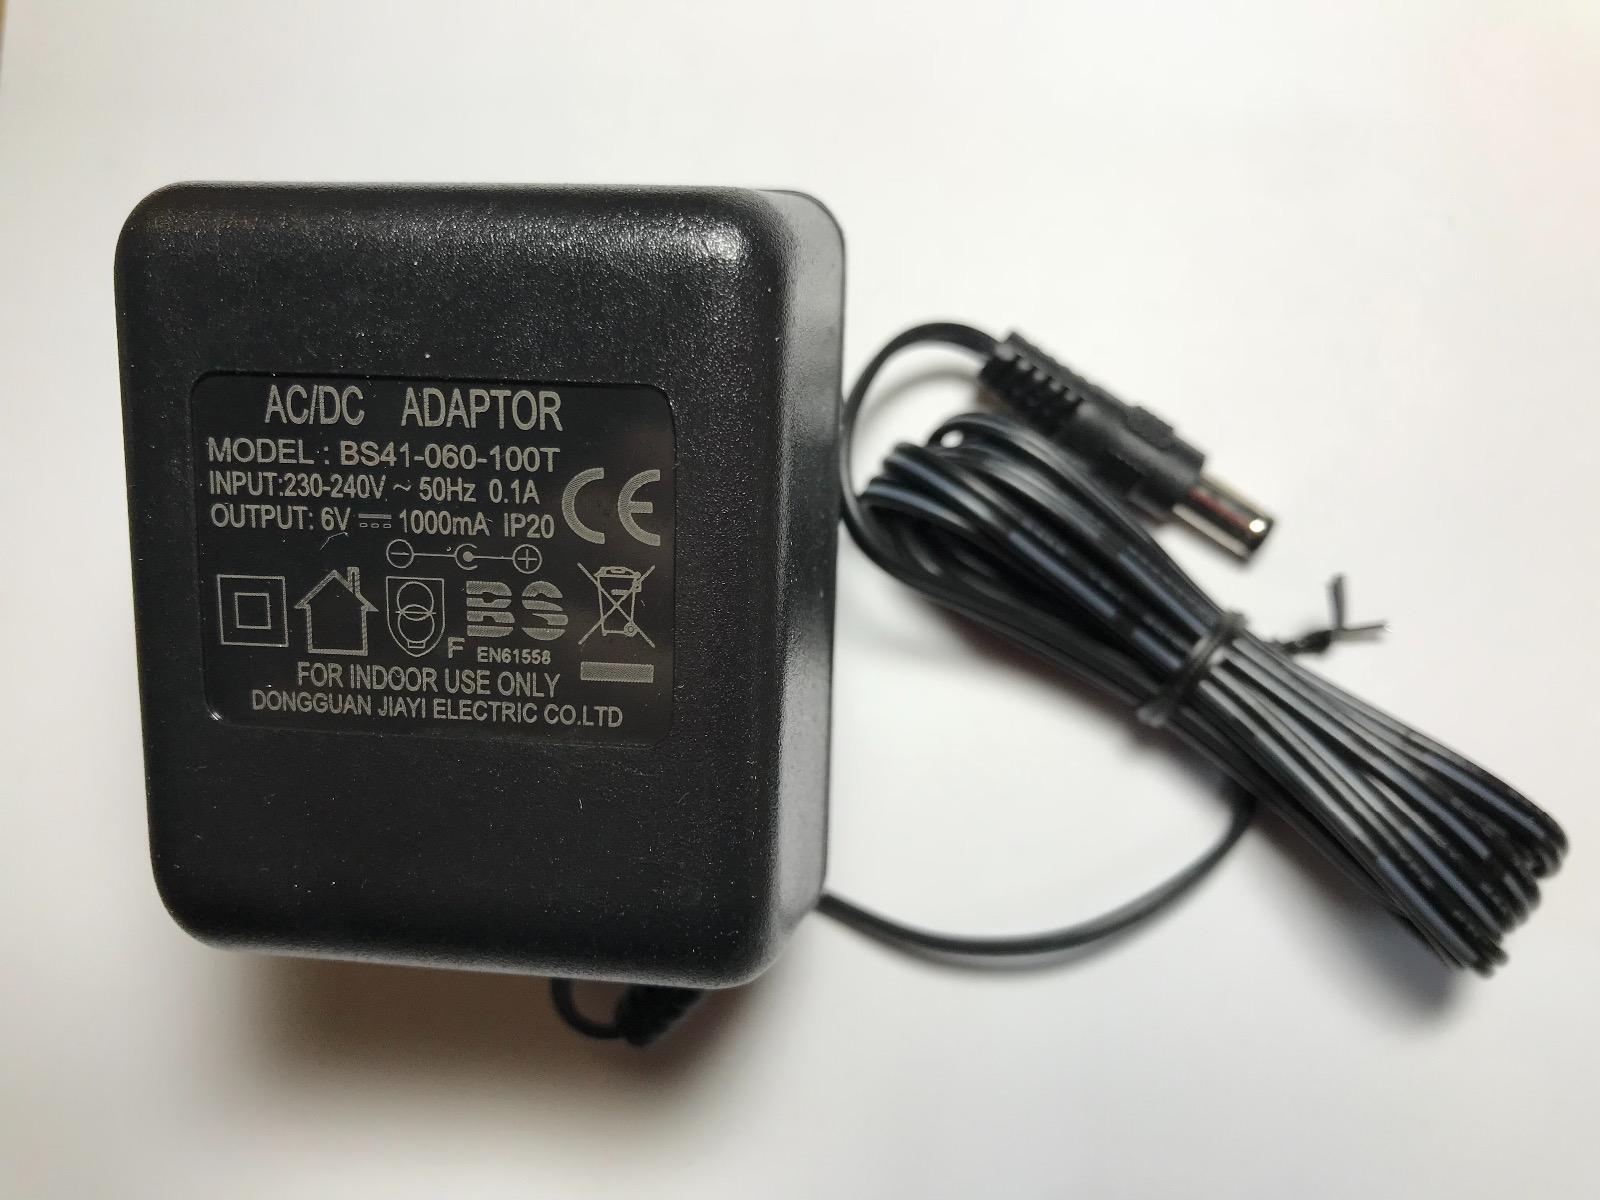 12v 1000ma. AC/DC Adaptor 230v 50hz. AC/DC Adaptor LK-d060050. AC DC Adapter 6v 1000ma. AC-DC Adaptor model LK-d080050.